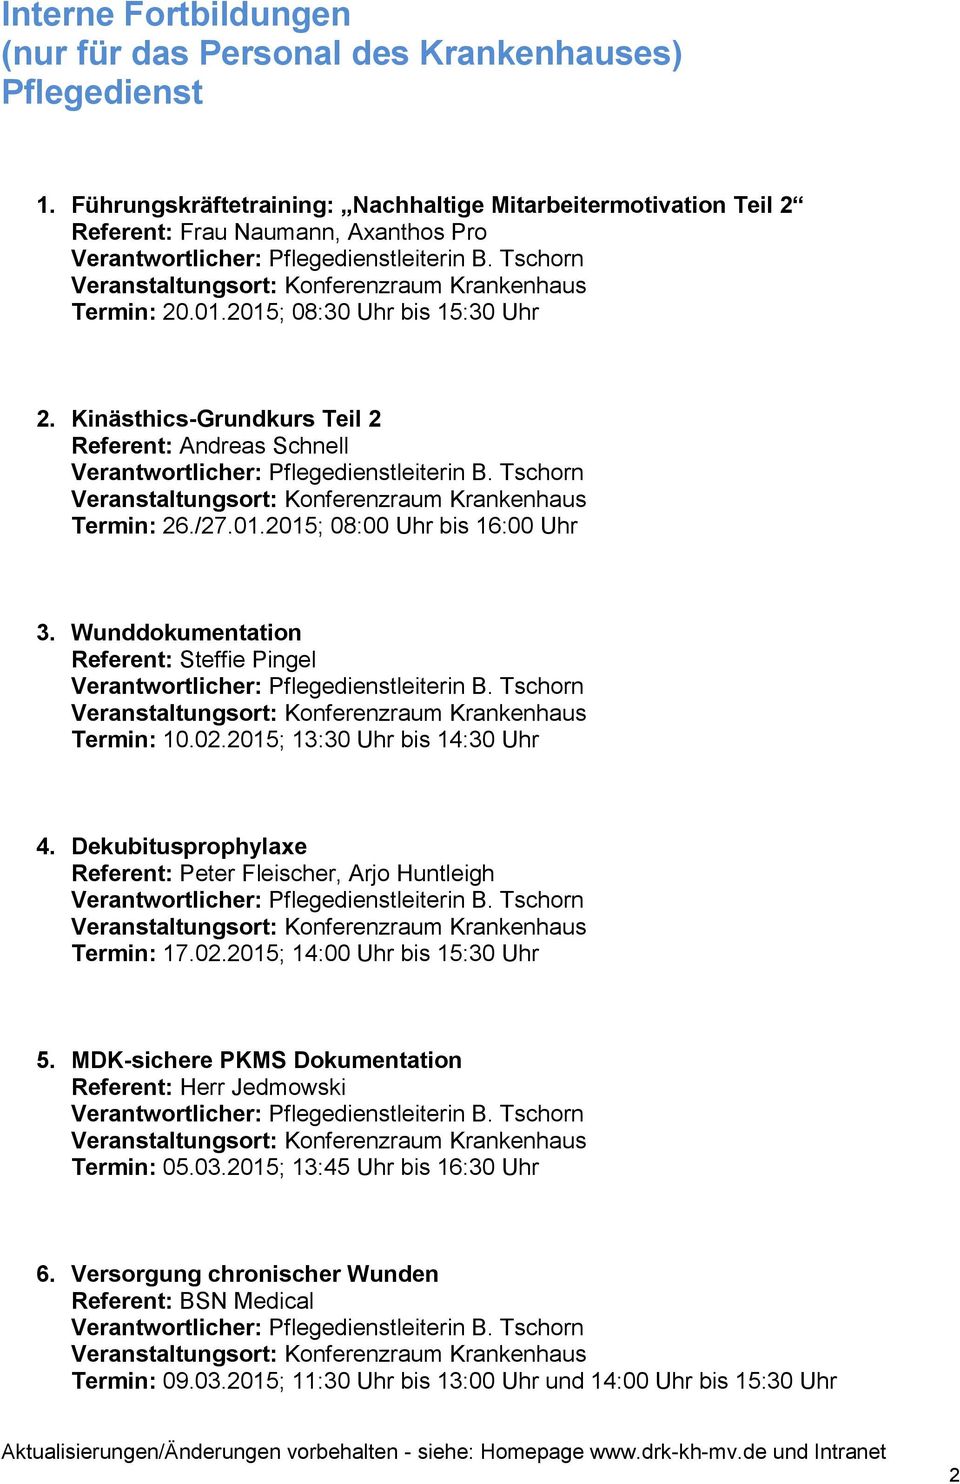 Kinästhics-Grundkurs Teil 2 Referent: Andreas Schnell Termin: 26./27.01.2015; 08:00 Uhr bis 16:00 Uhr 3. Wunddokumentation Referent: Steffie Pingel Termin: 10.02.